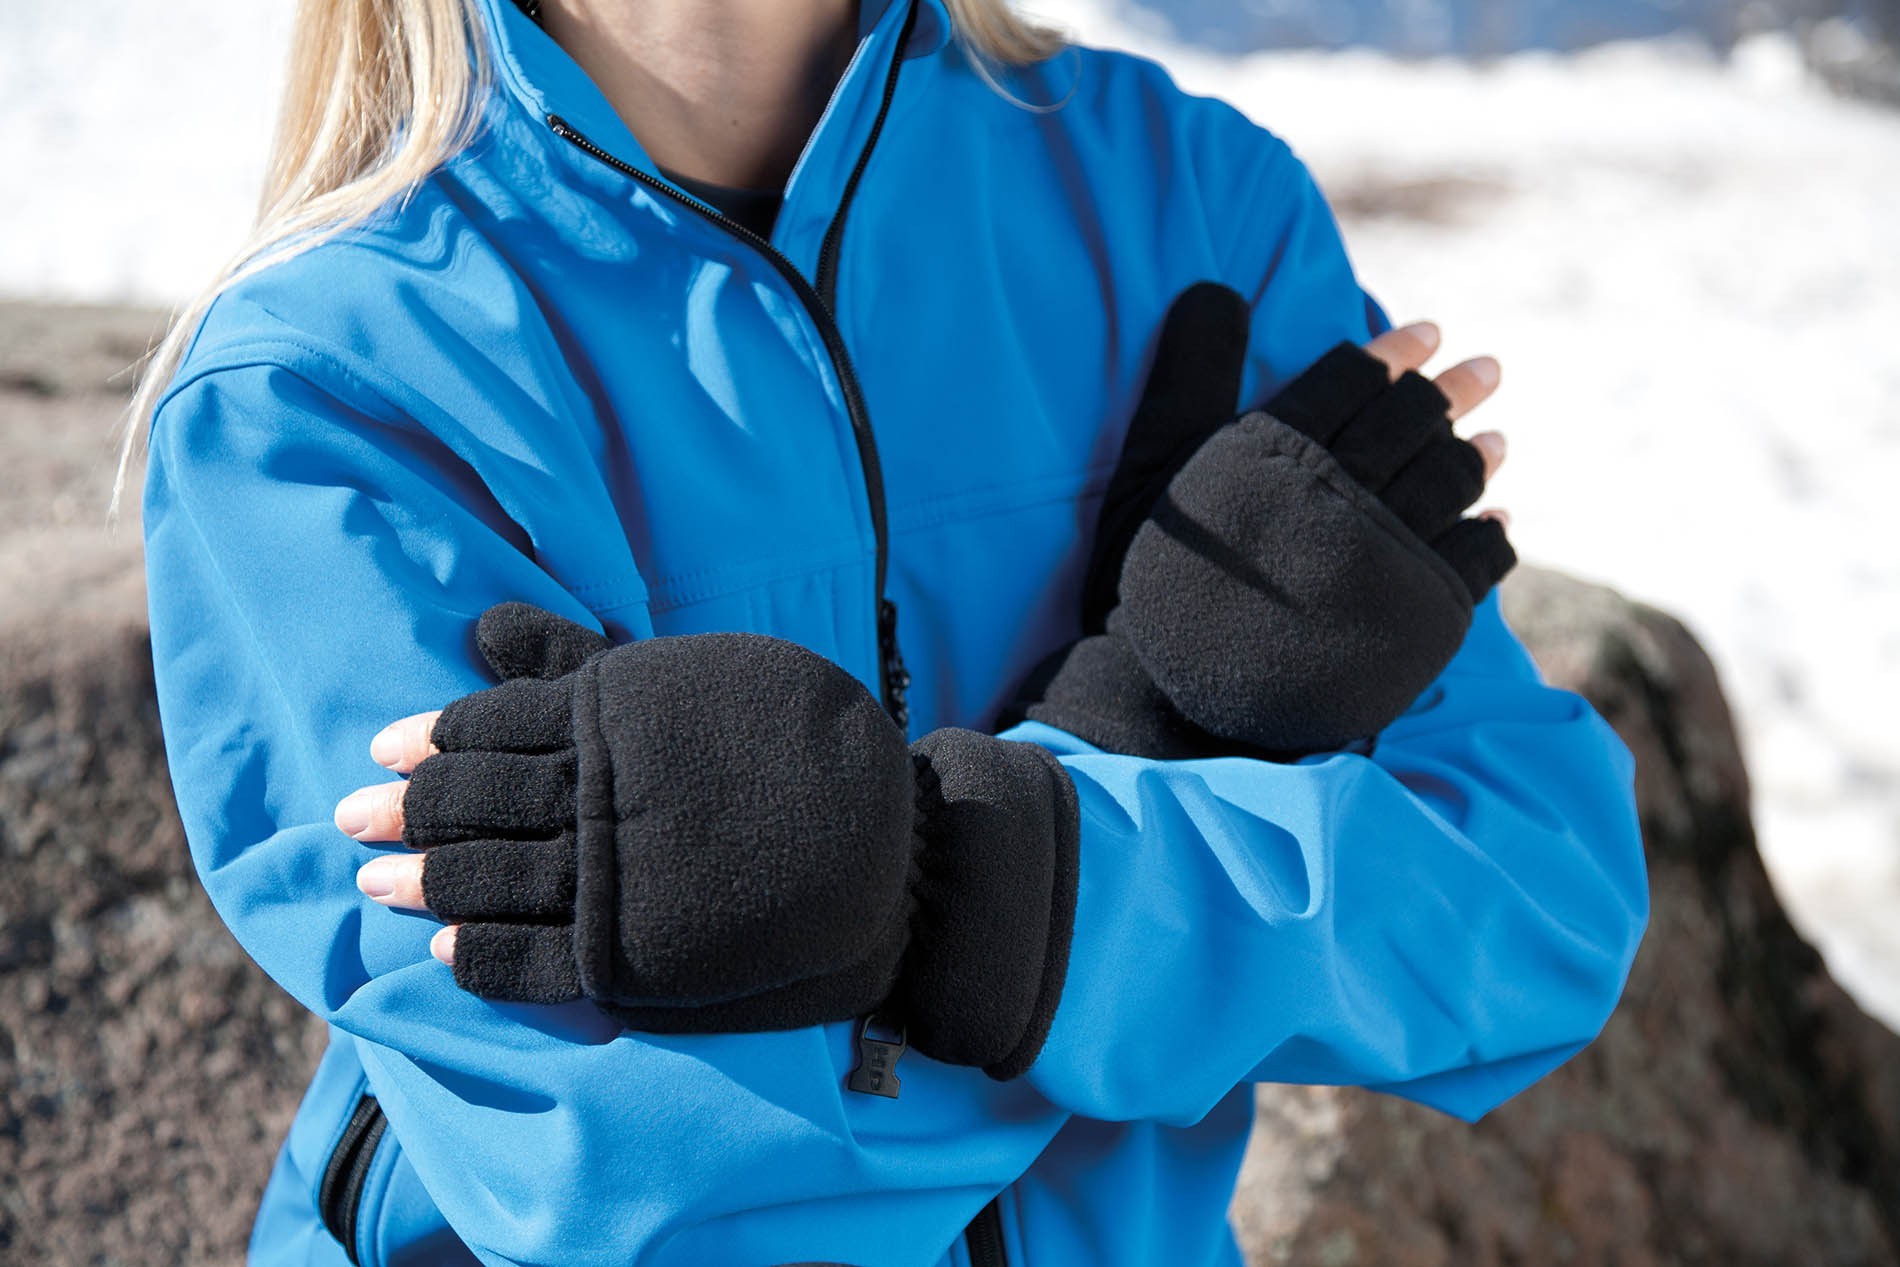 Mitaines / Moufles contre le froid R363X - ProtecNord : Gants de froid